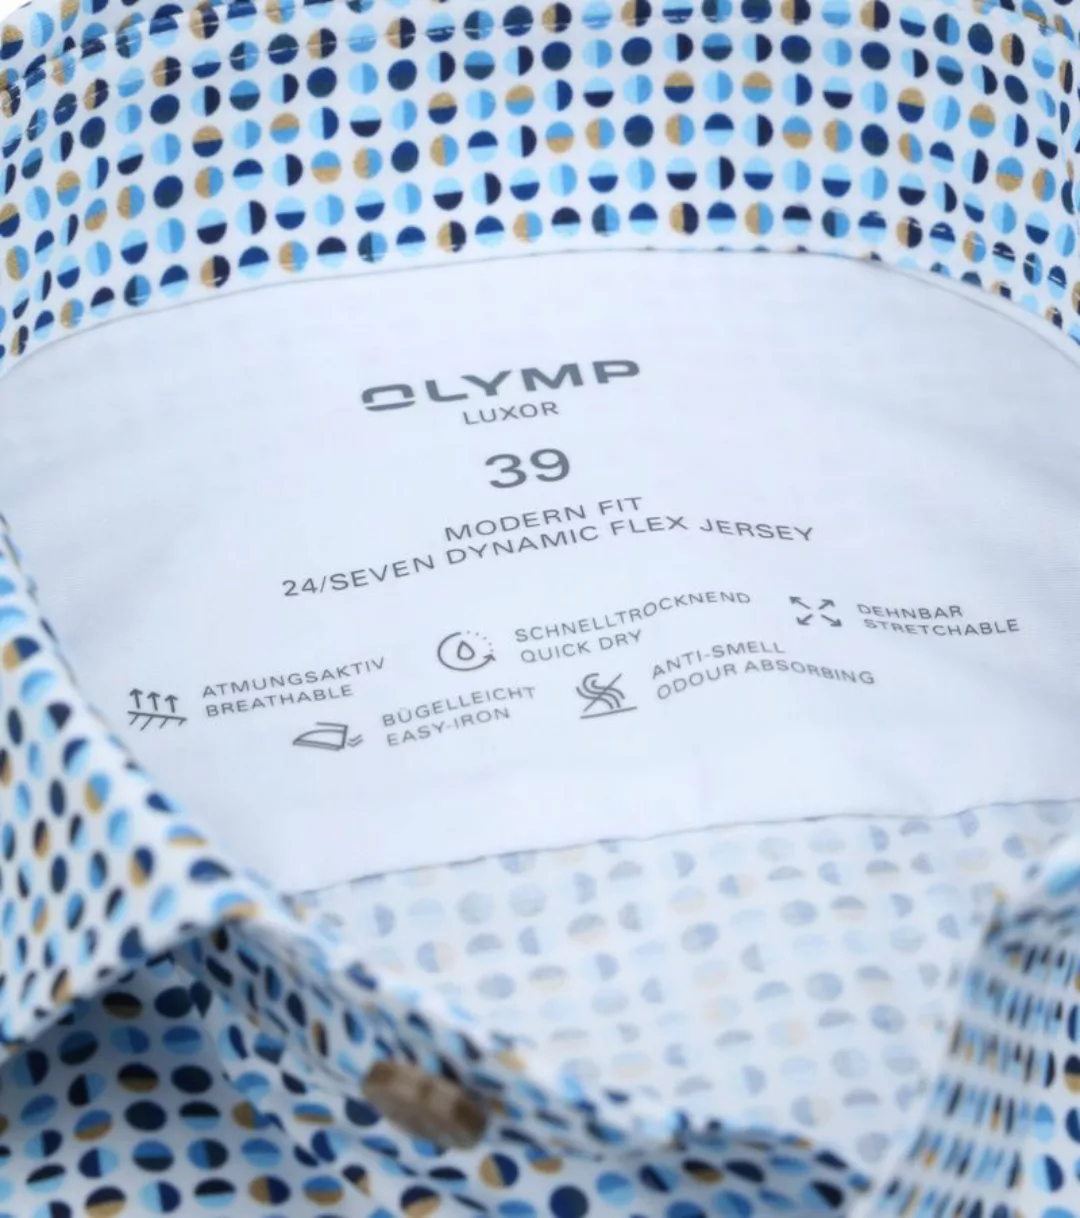 OLYMP Luxor Hemd Kreise Blau - Größe 42 günstig online kaufen